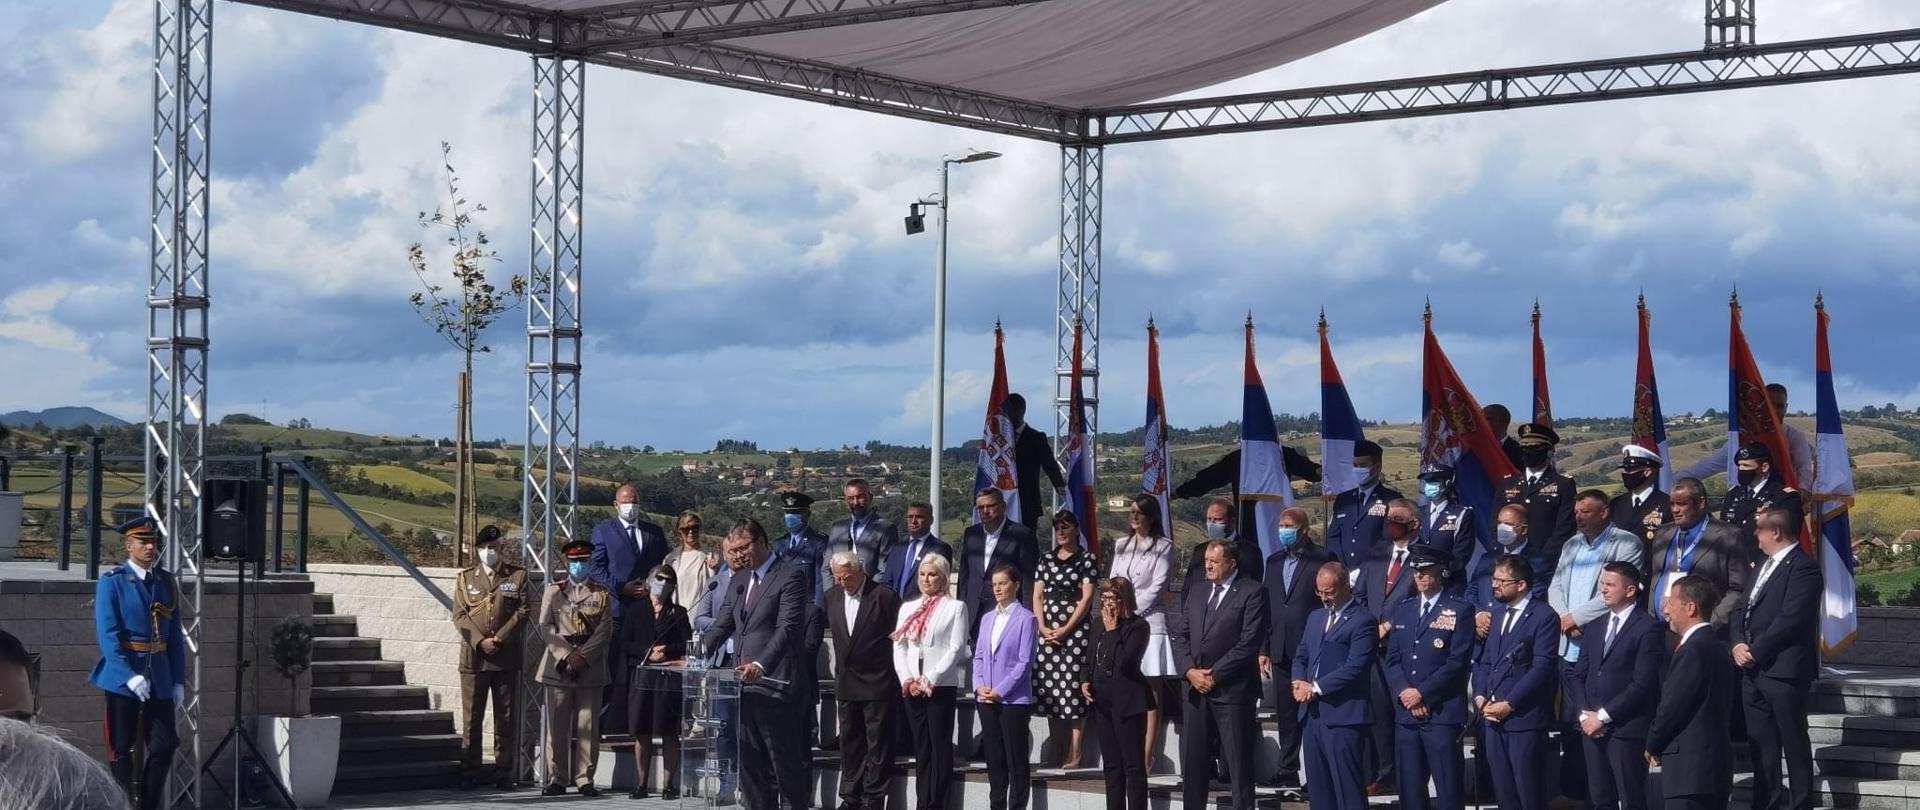 Ambasador RP w Serbii uczestniczył w uroczystych obchodach 76. rocznicy operacji Halyard, które odbyły się 26 września 2020 r. w Pranjani w zachodniej Serbii. W ceremonii wzięli udział przedstawiciele najwyższych władz Serbii, a także przedstawiciele korpusu dyplomatycznego. 